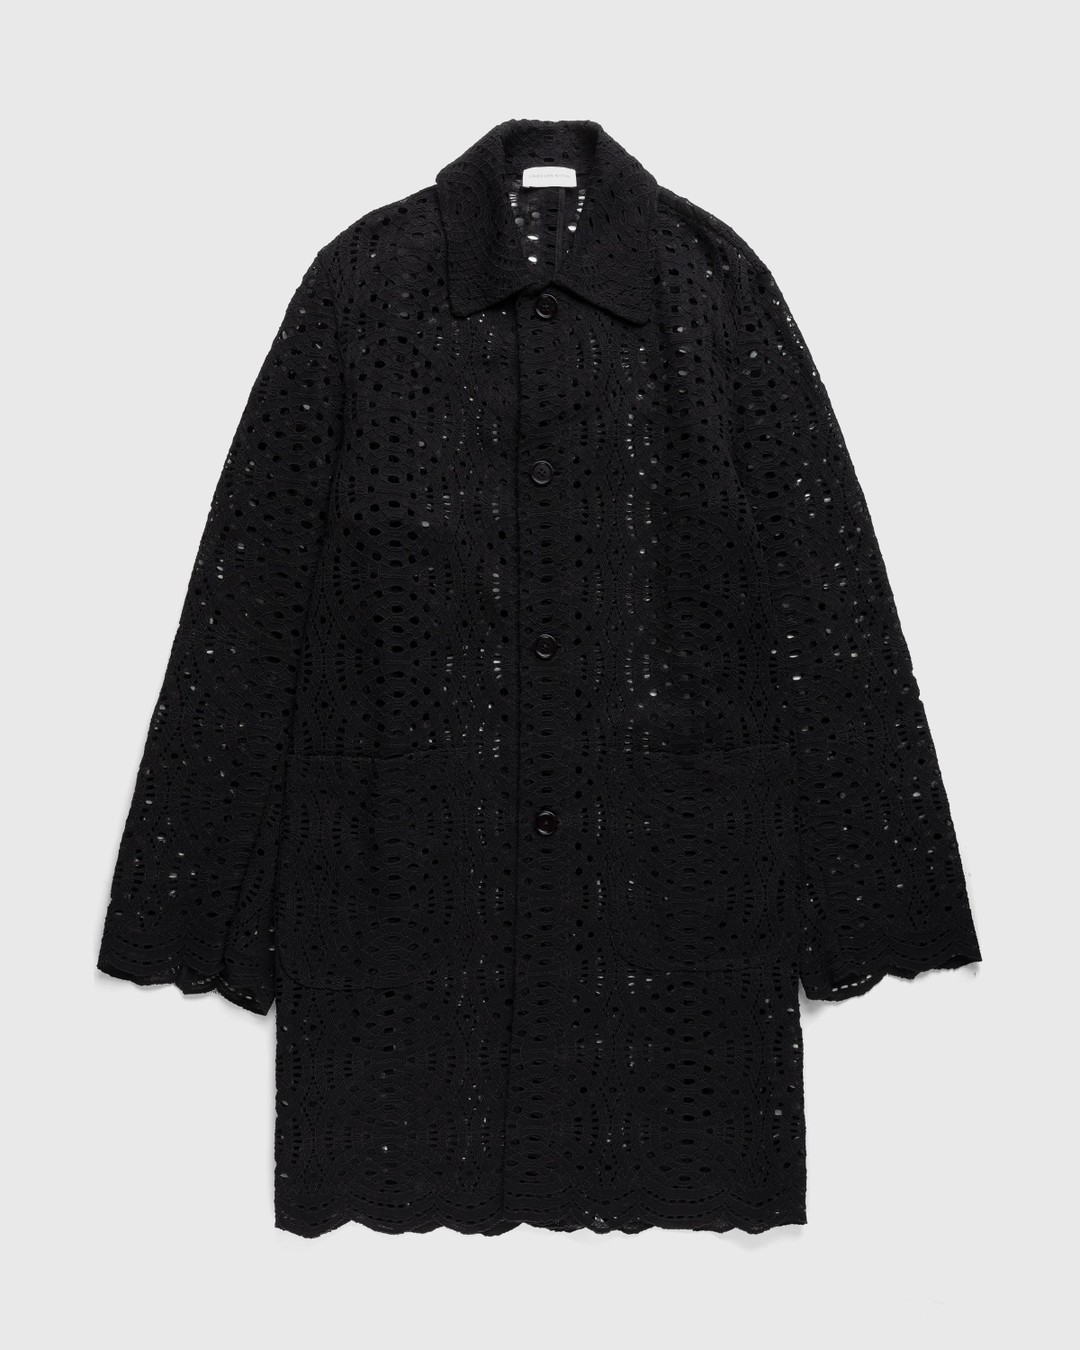 Dries van Noten – Rakin Coat Black - Trench Coats - Black - Image 1